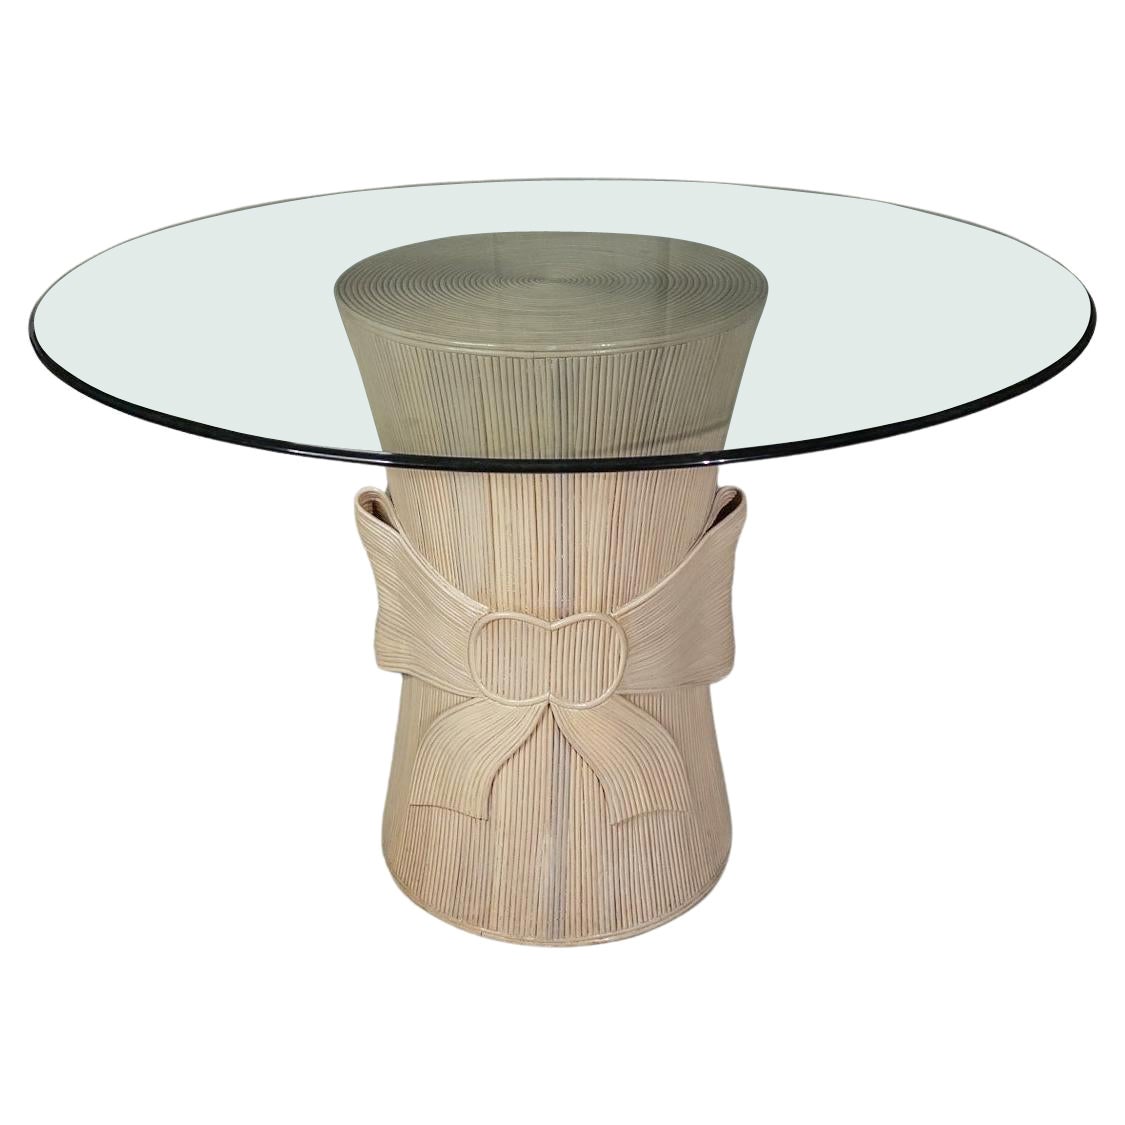 Gabriella Crespi Stil Rattan-Tisch mit geteiltem Schilf-Trompe l'Oeil-Schleifen und Glasplatte